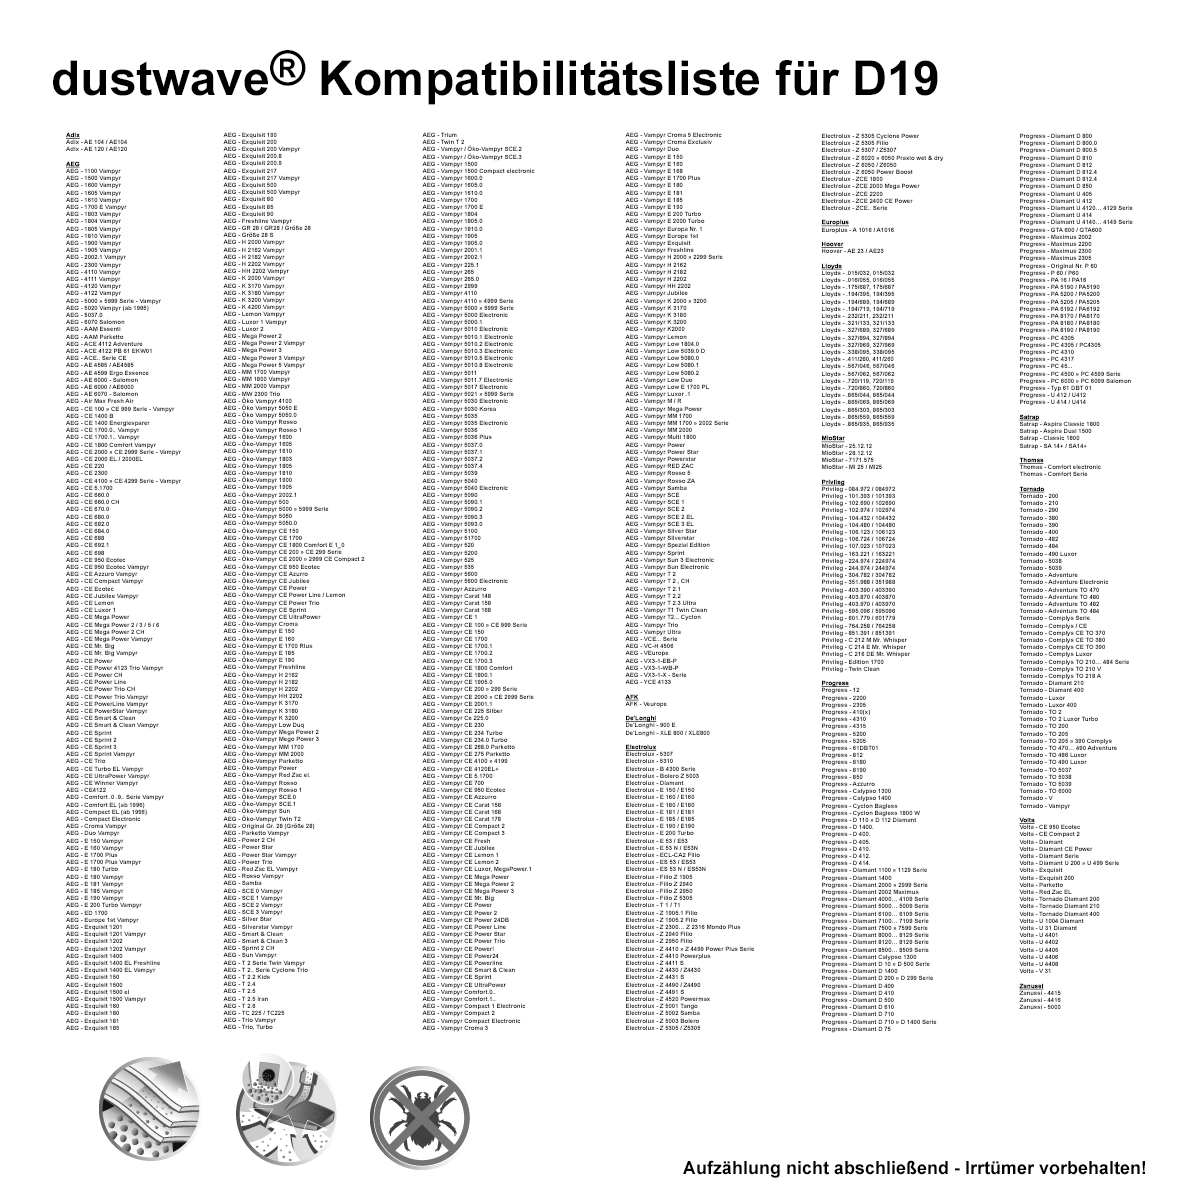 10 Staubsaugerbeutel + Filter passend für AEG Vampyr CEANIMAL, Comfort, Exquisit, Vampyr CE, MegaPower, E-Serie, Gr. 28, ACE-Serie von dustwave® Qualität Made in Germany - ersetzt Swirl A07